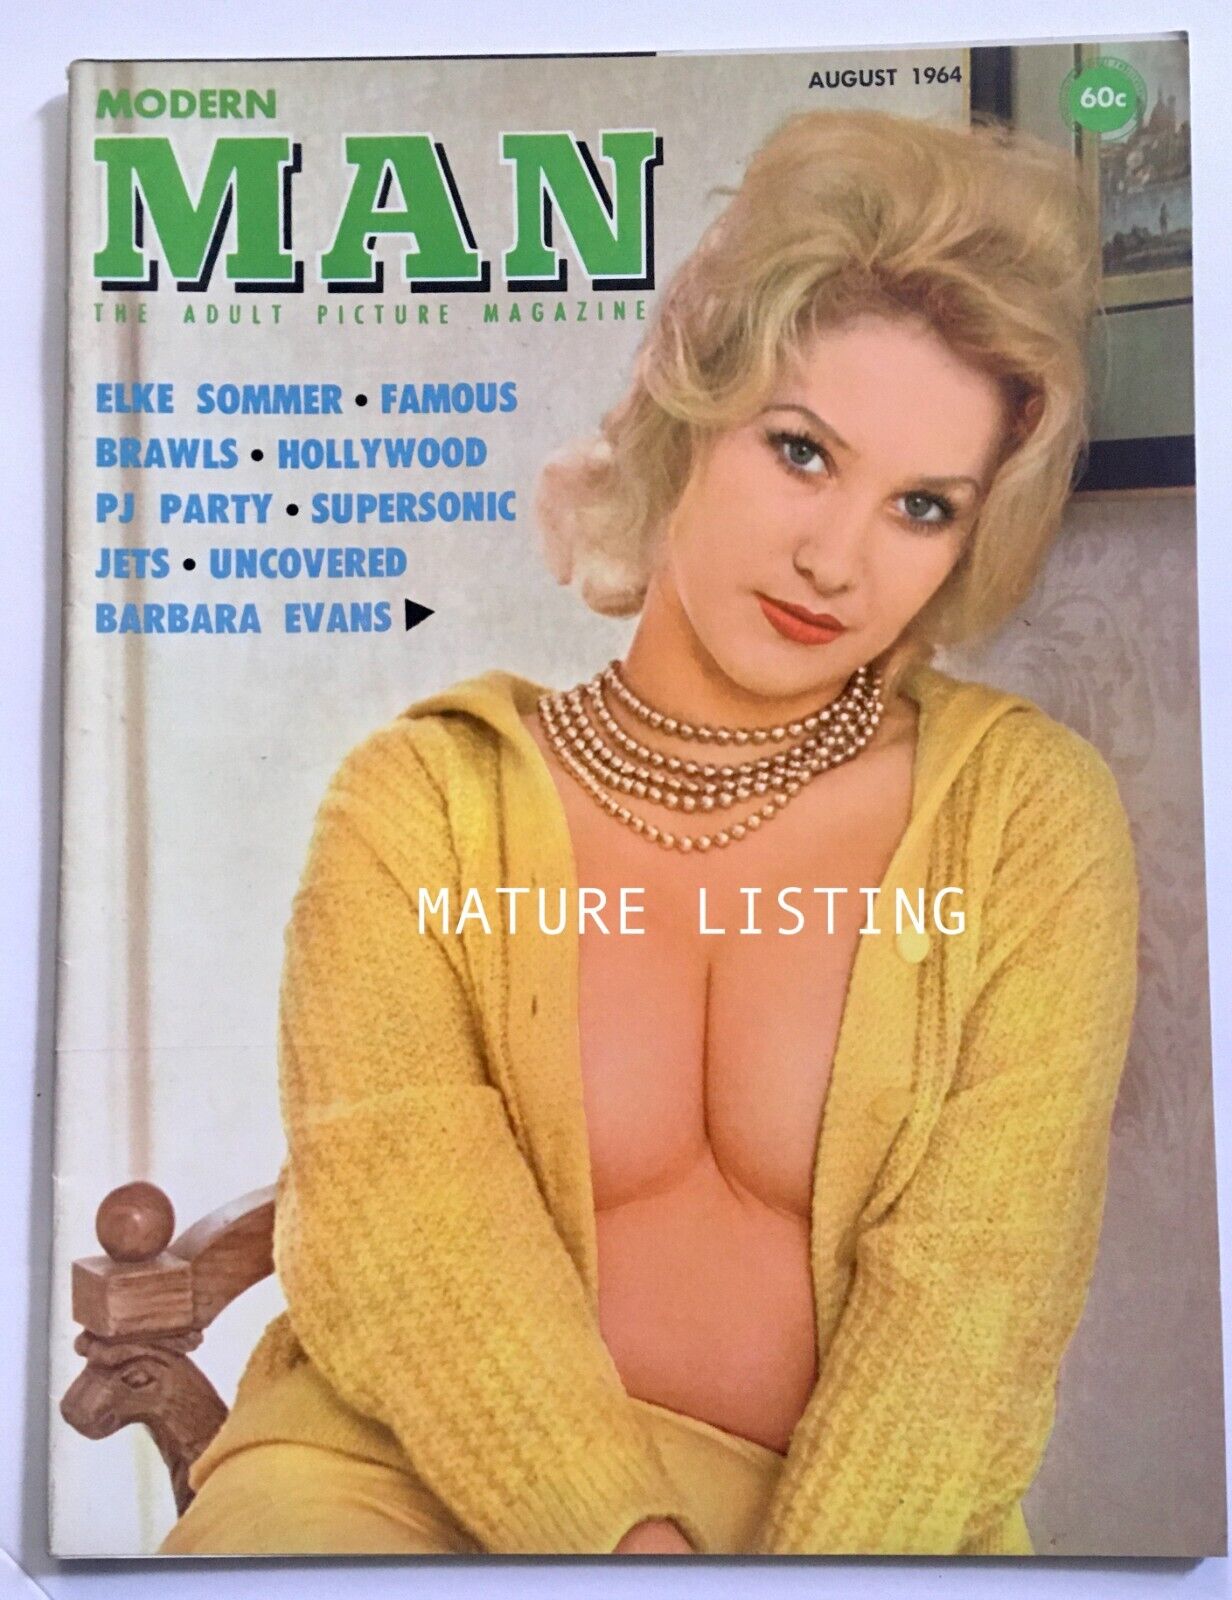 Modern Man Vol.2 No.15 August 1964 Featuring: Elke Sommers, Barbara Evans